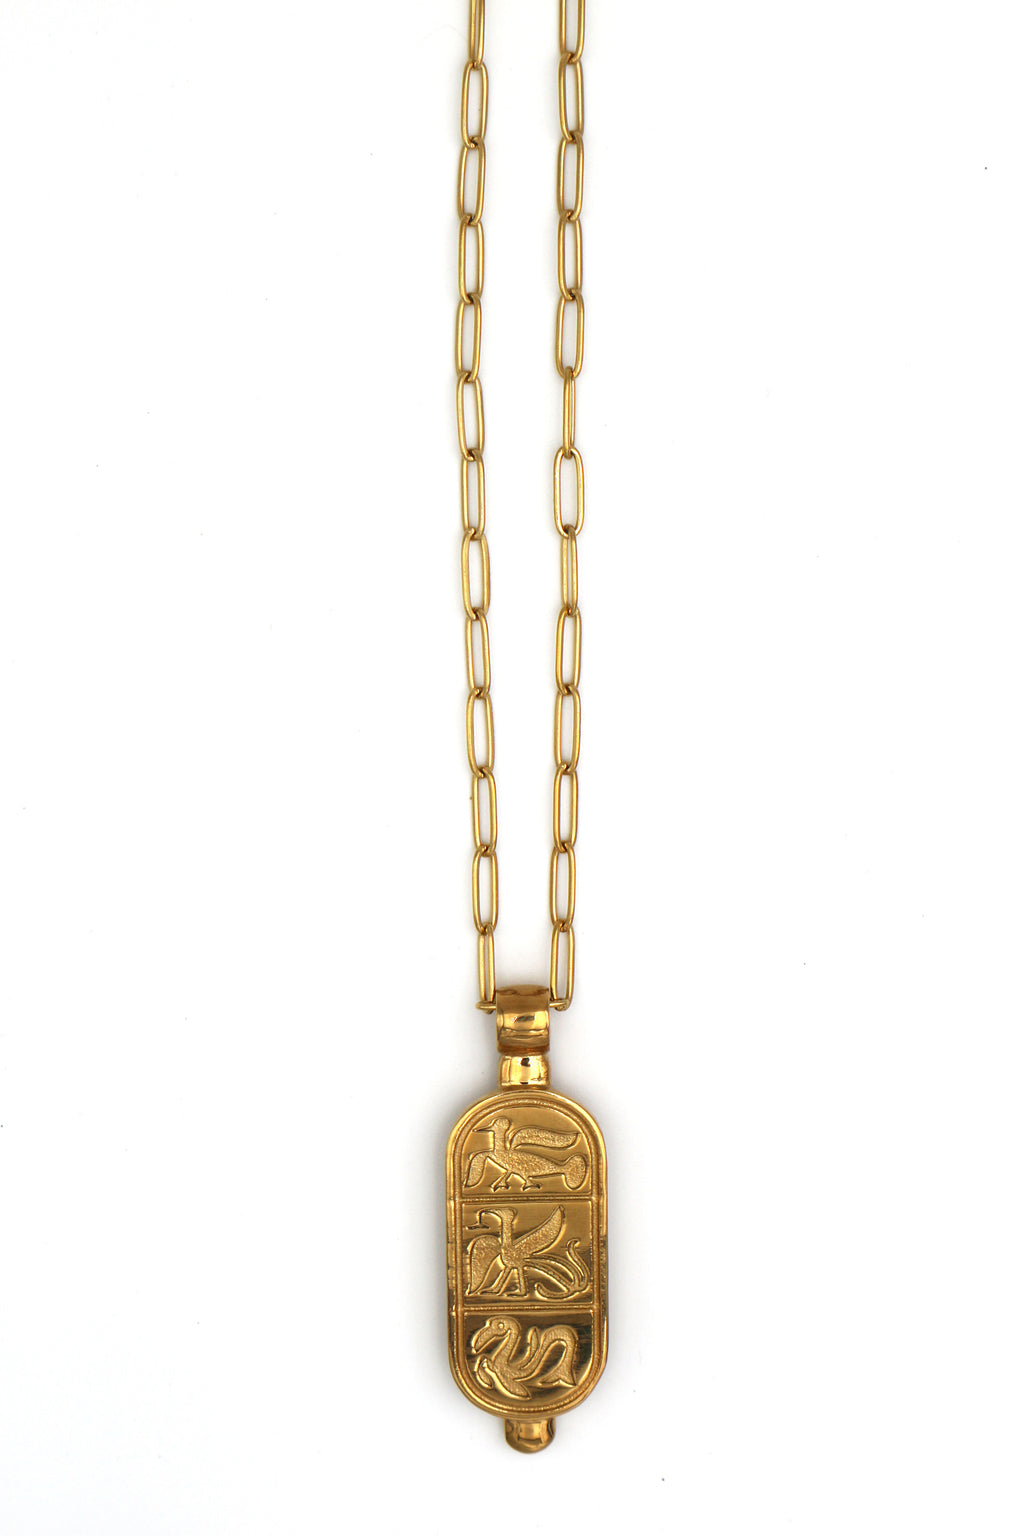 ODYSSÉE // L’Amulette hiéroglyphée